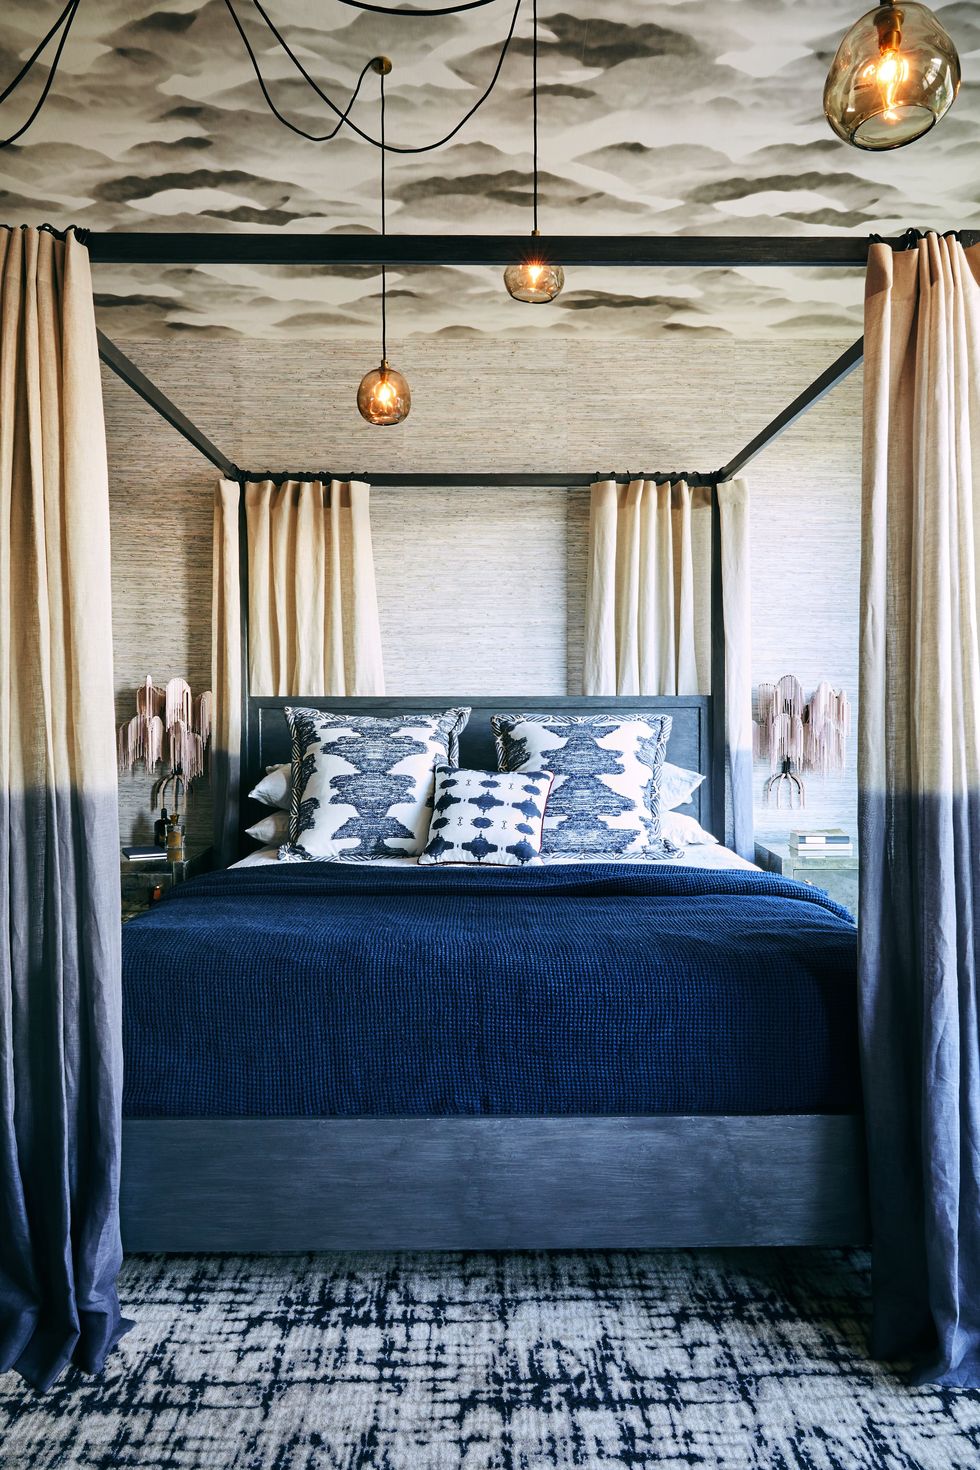 Hoàn thiện với các điểm nhấn theo phong cách Art Deco, phòng ngủ chính này của Jeff Schlarb Design Studio có đầy đủ các họa tiết, hoa văn và màu sắc.